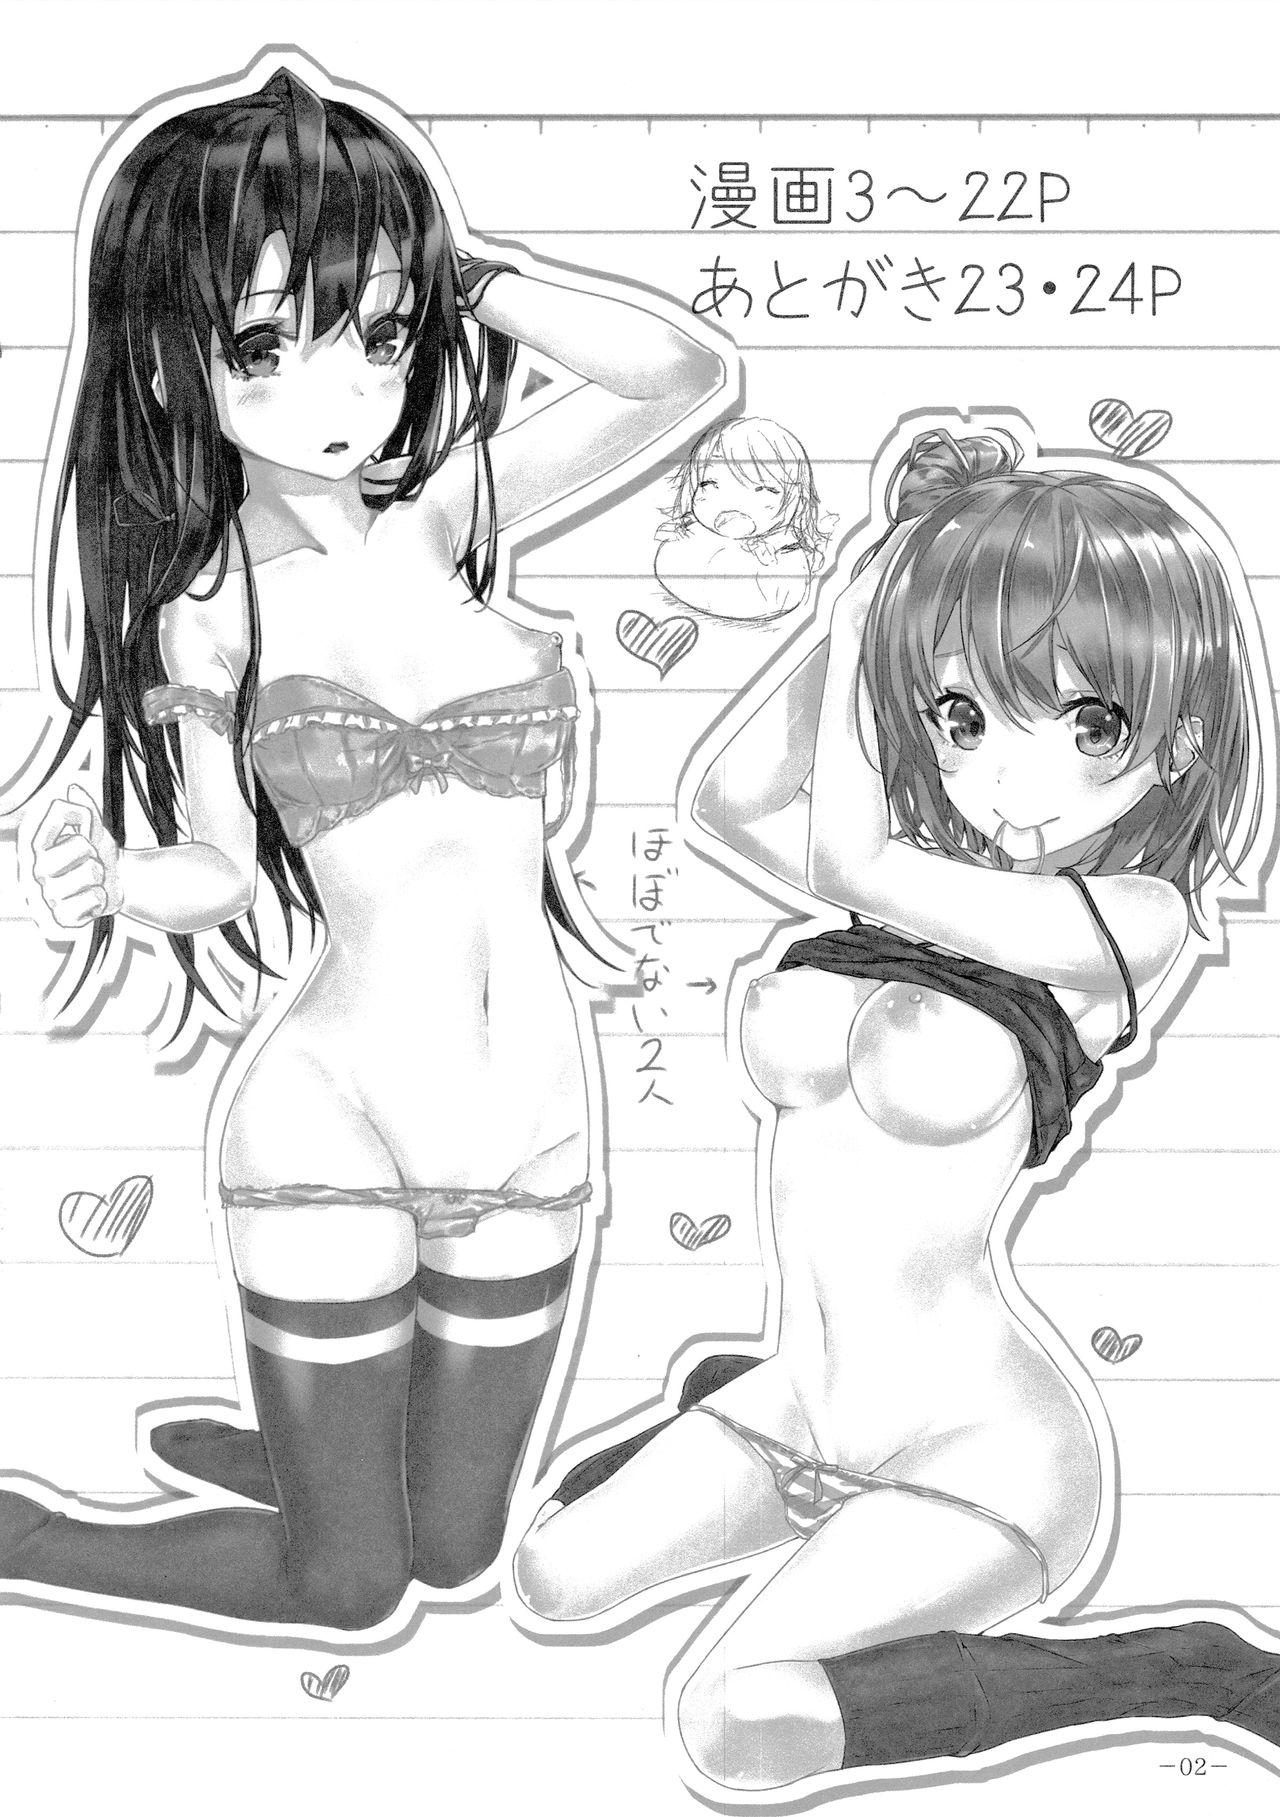 Bikini Kitto, Isshiki Iroha wa… - Yahari ore no seishun love come wa machigatteiru Shy - Page 3